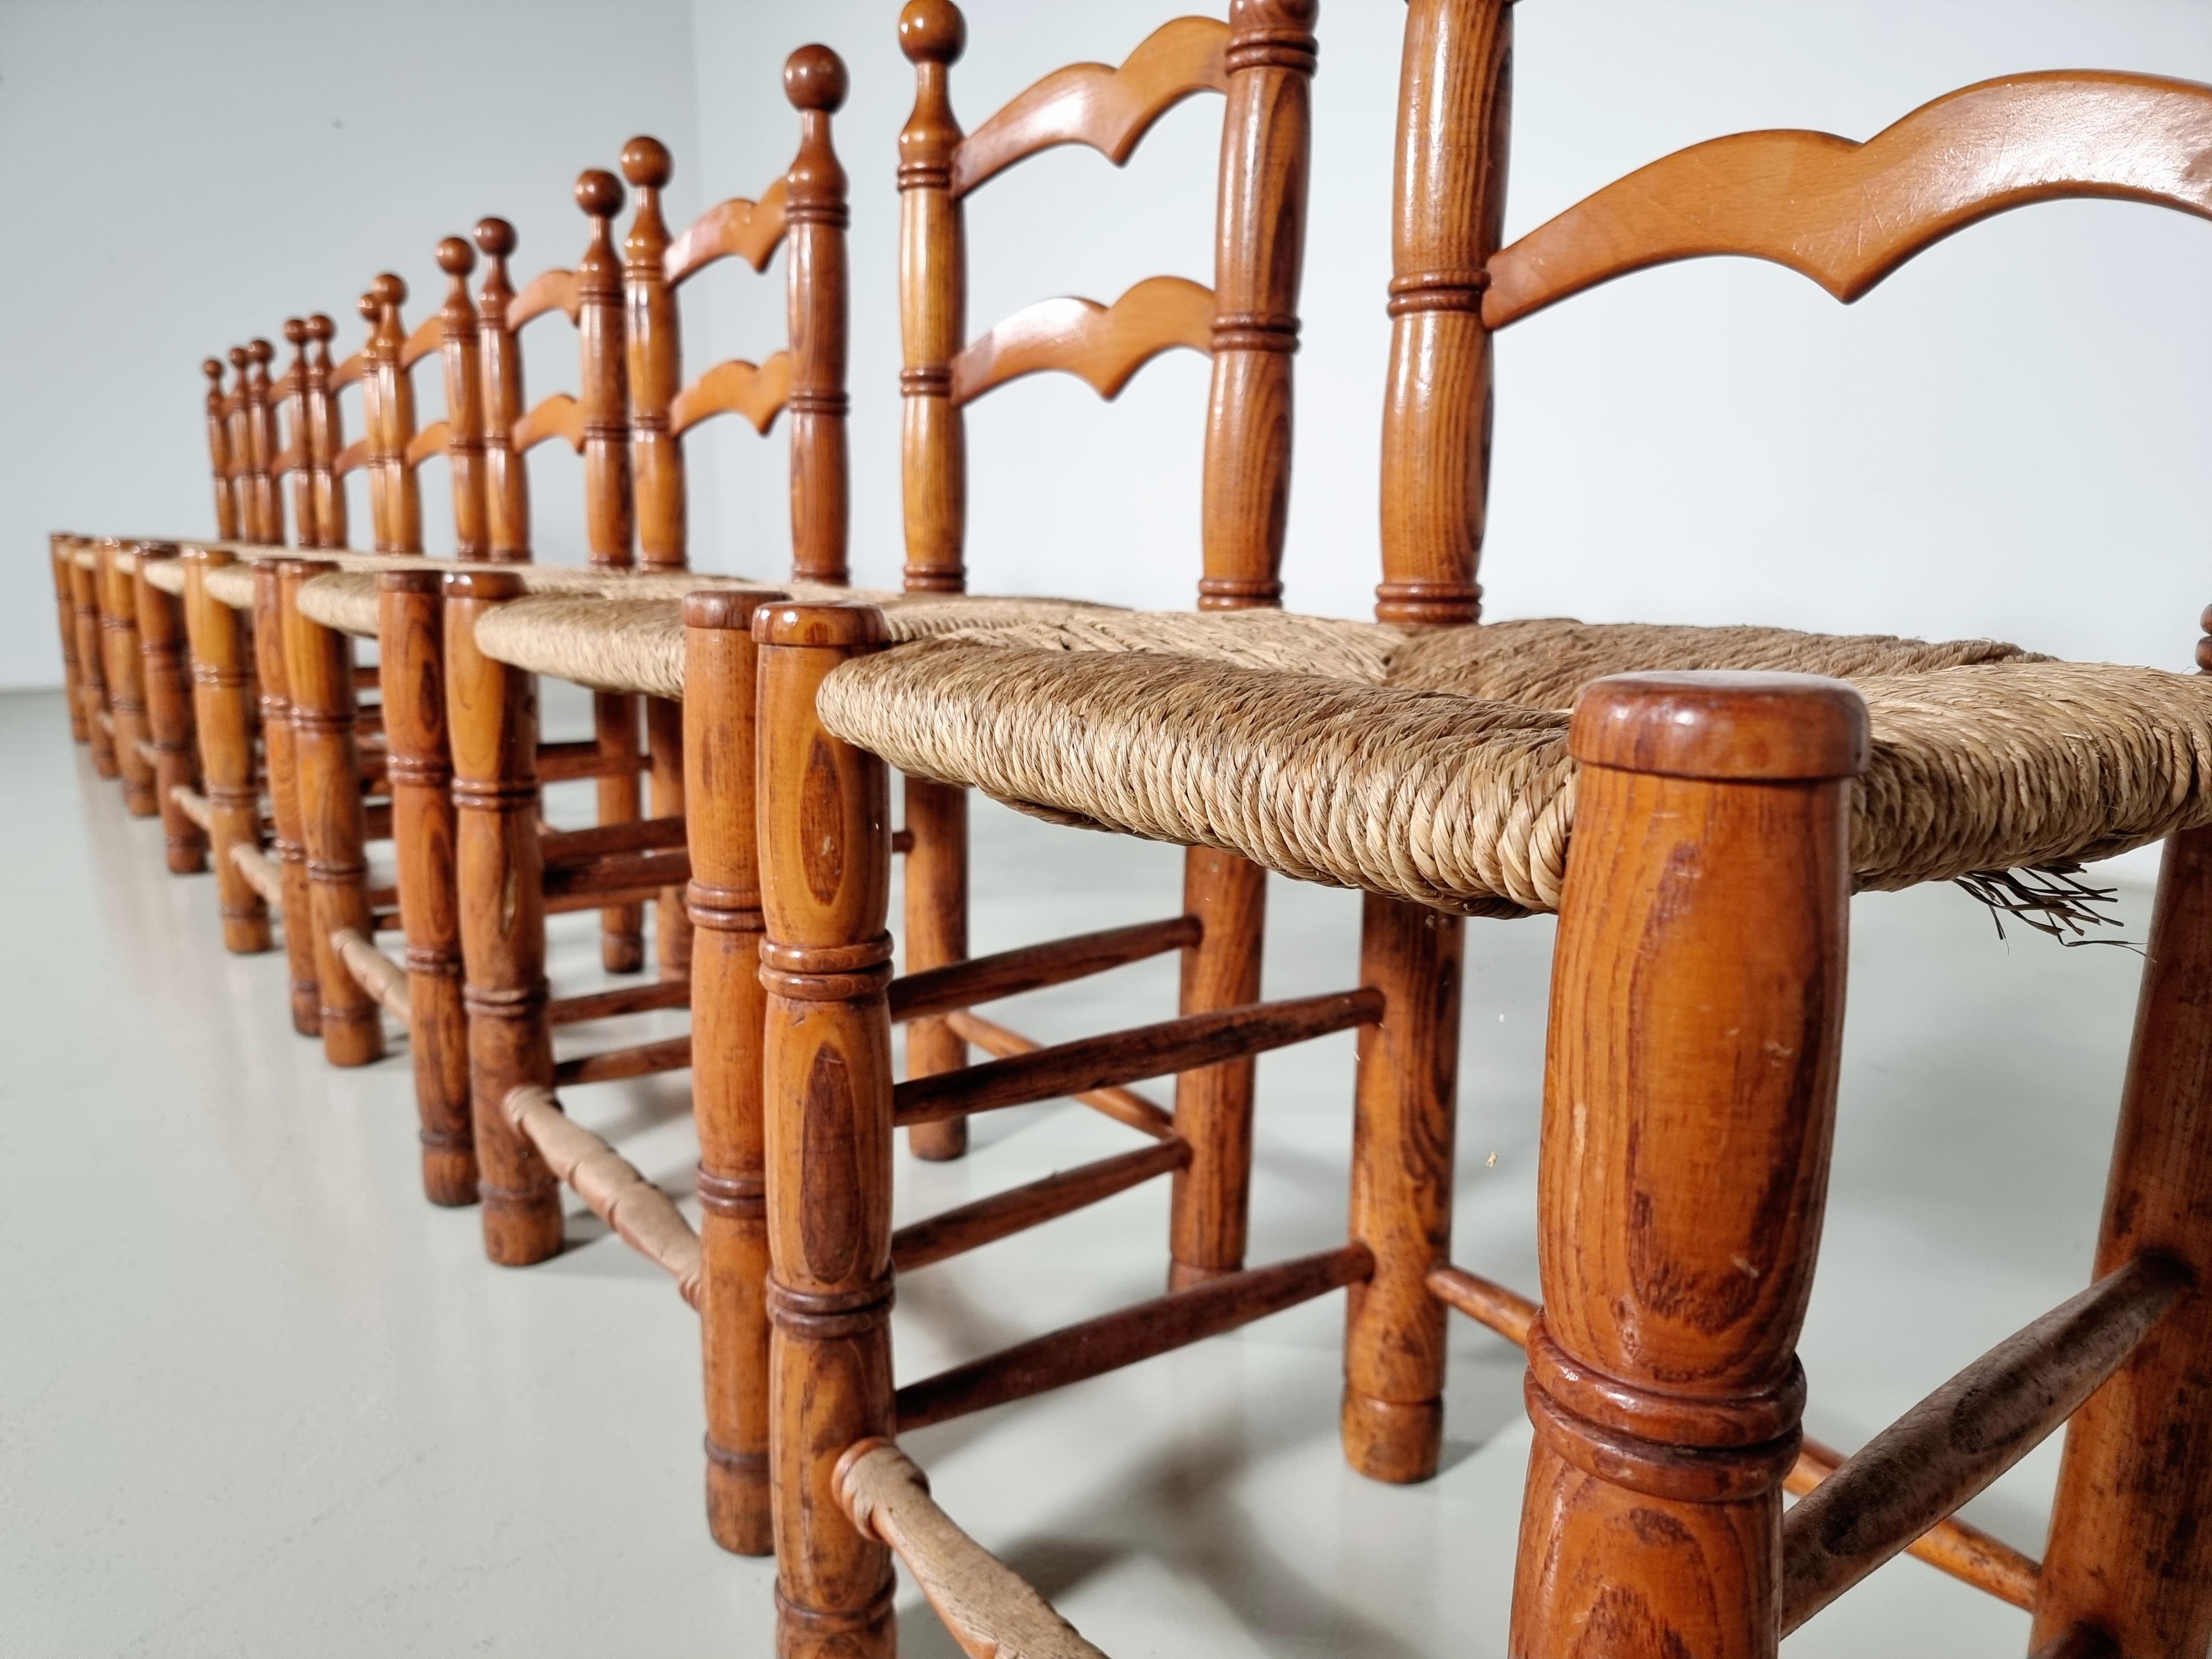 Lot de 12 chaises de salle à manger rustiques de style fermier en chêne avec des sièges en jonc tressé. Fabriquées en France dans les années 1970. Les cadres en chêne sont dans leur finition d'origine légèrement teintée. Les sièges en jonc sont